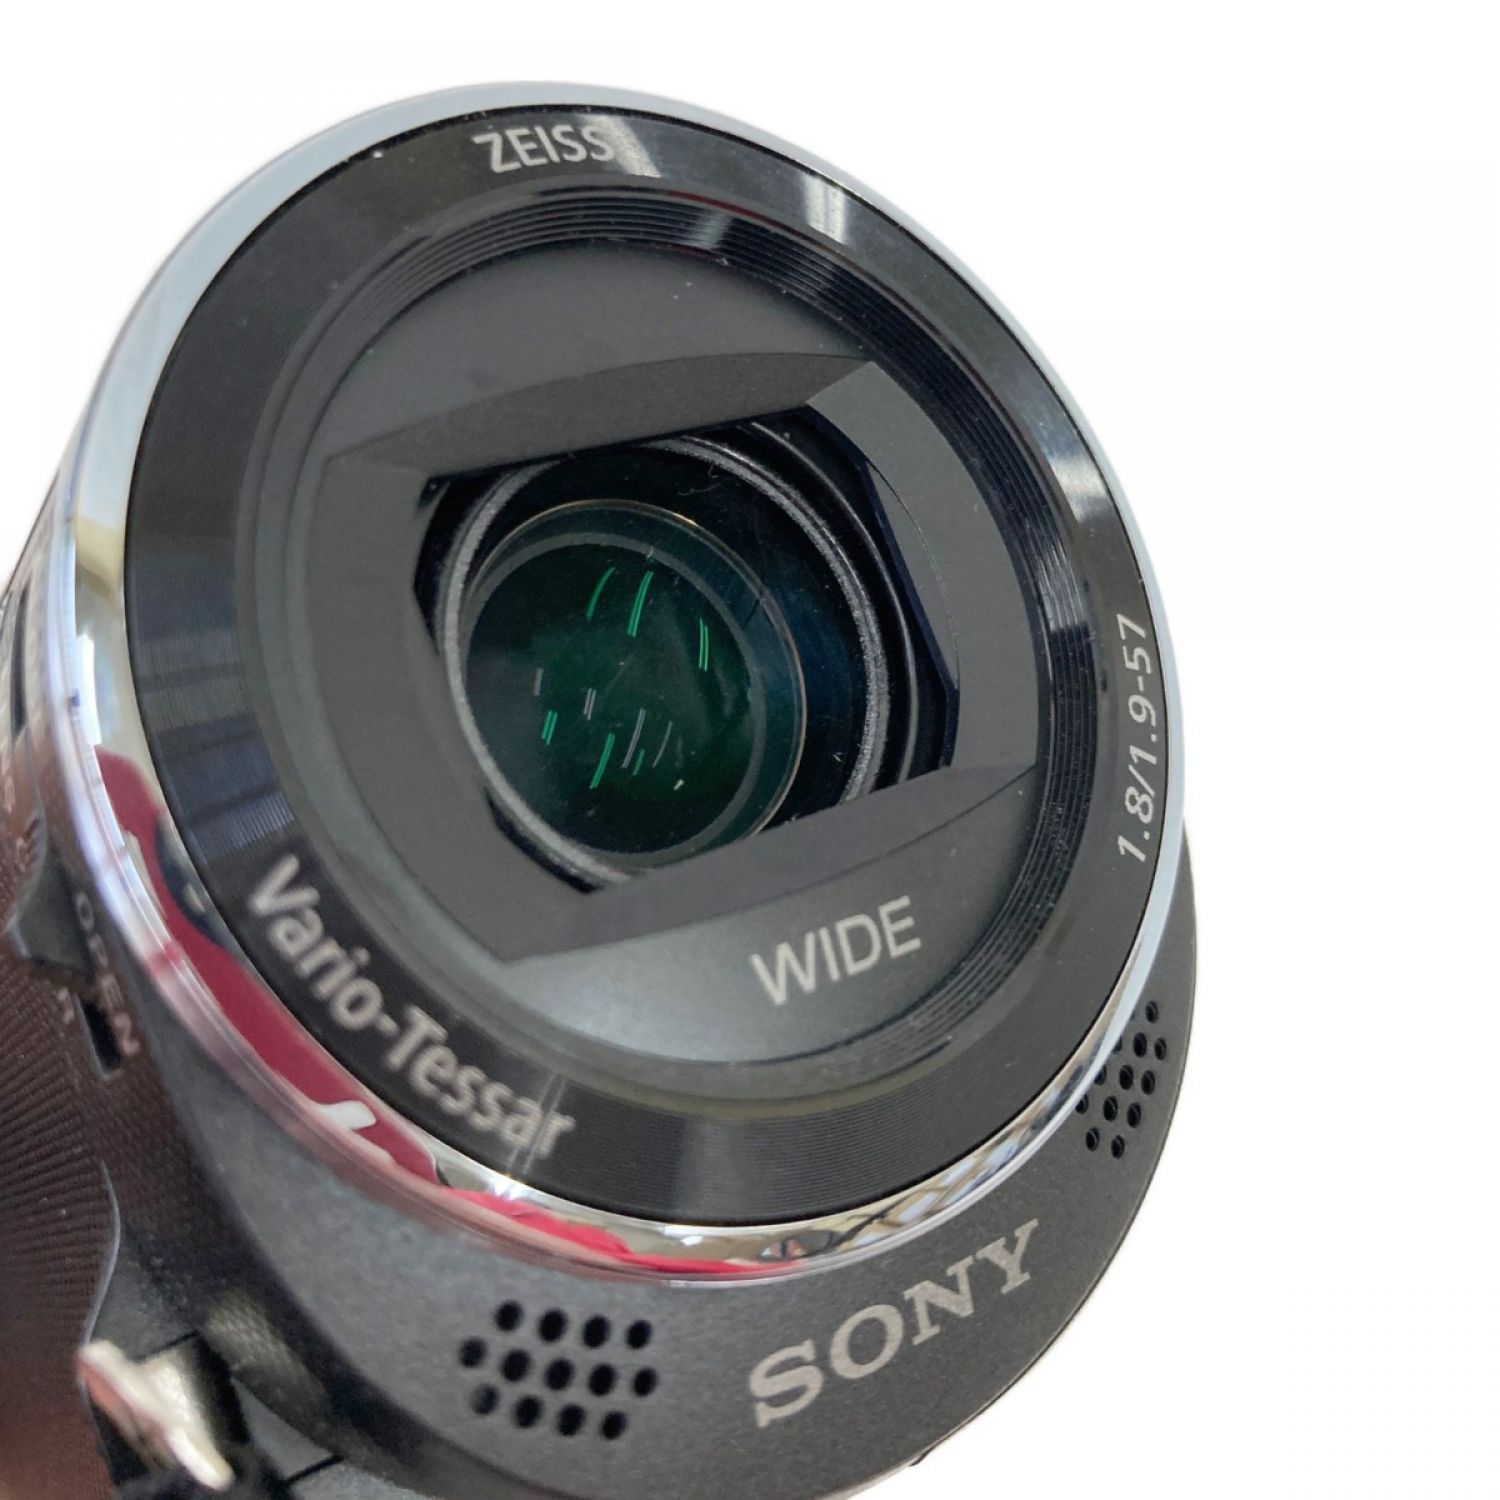 SONY デジタルビデオカメラ ハンディカム HDR-CX470 ブラック